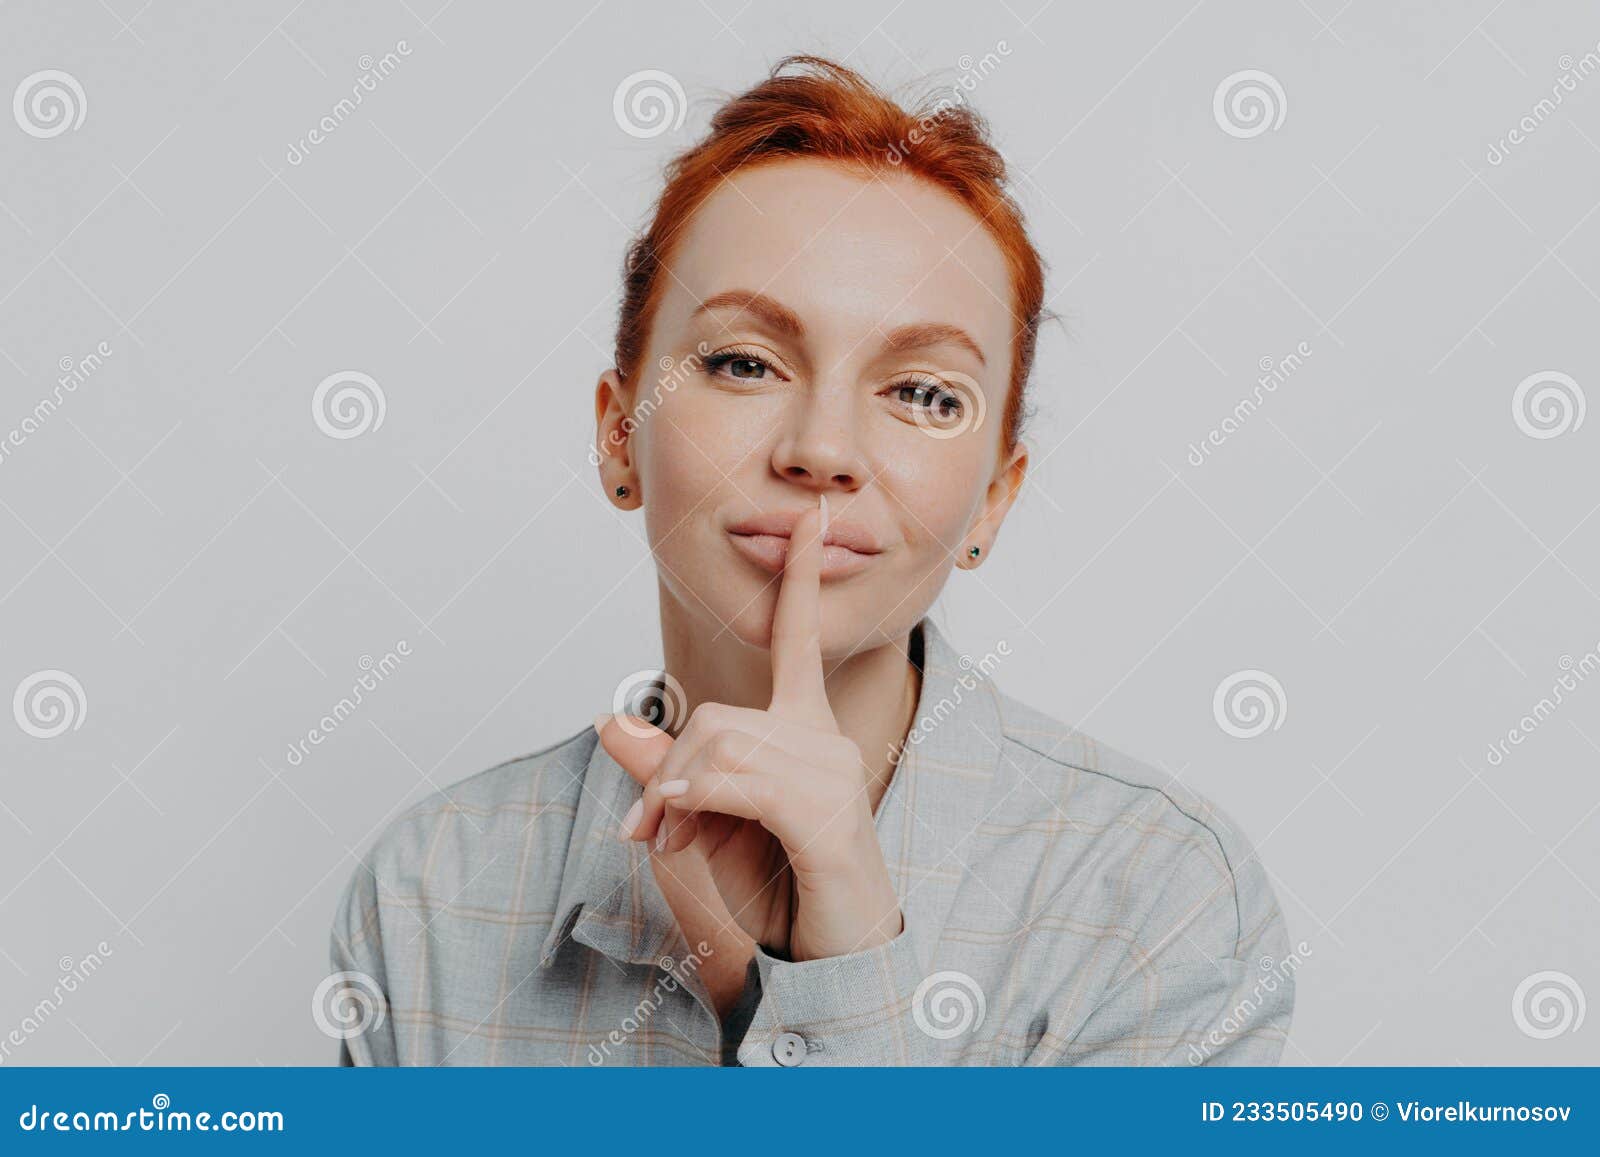 安静。手指放在红唇上的女人露出了嘘嘘。黑底蕾丝面具的性感女孩。图片免费下载-5097060937-千图网Pro